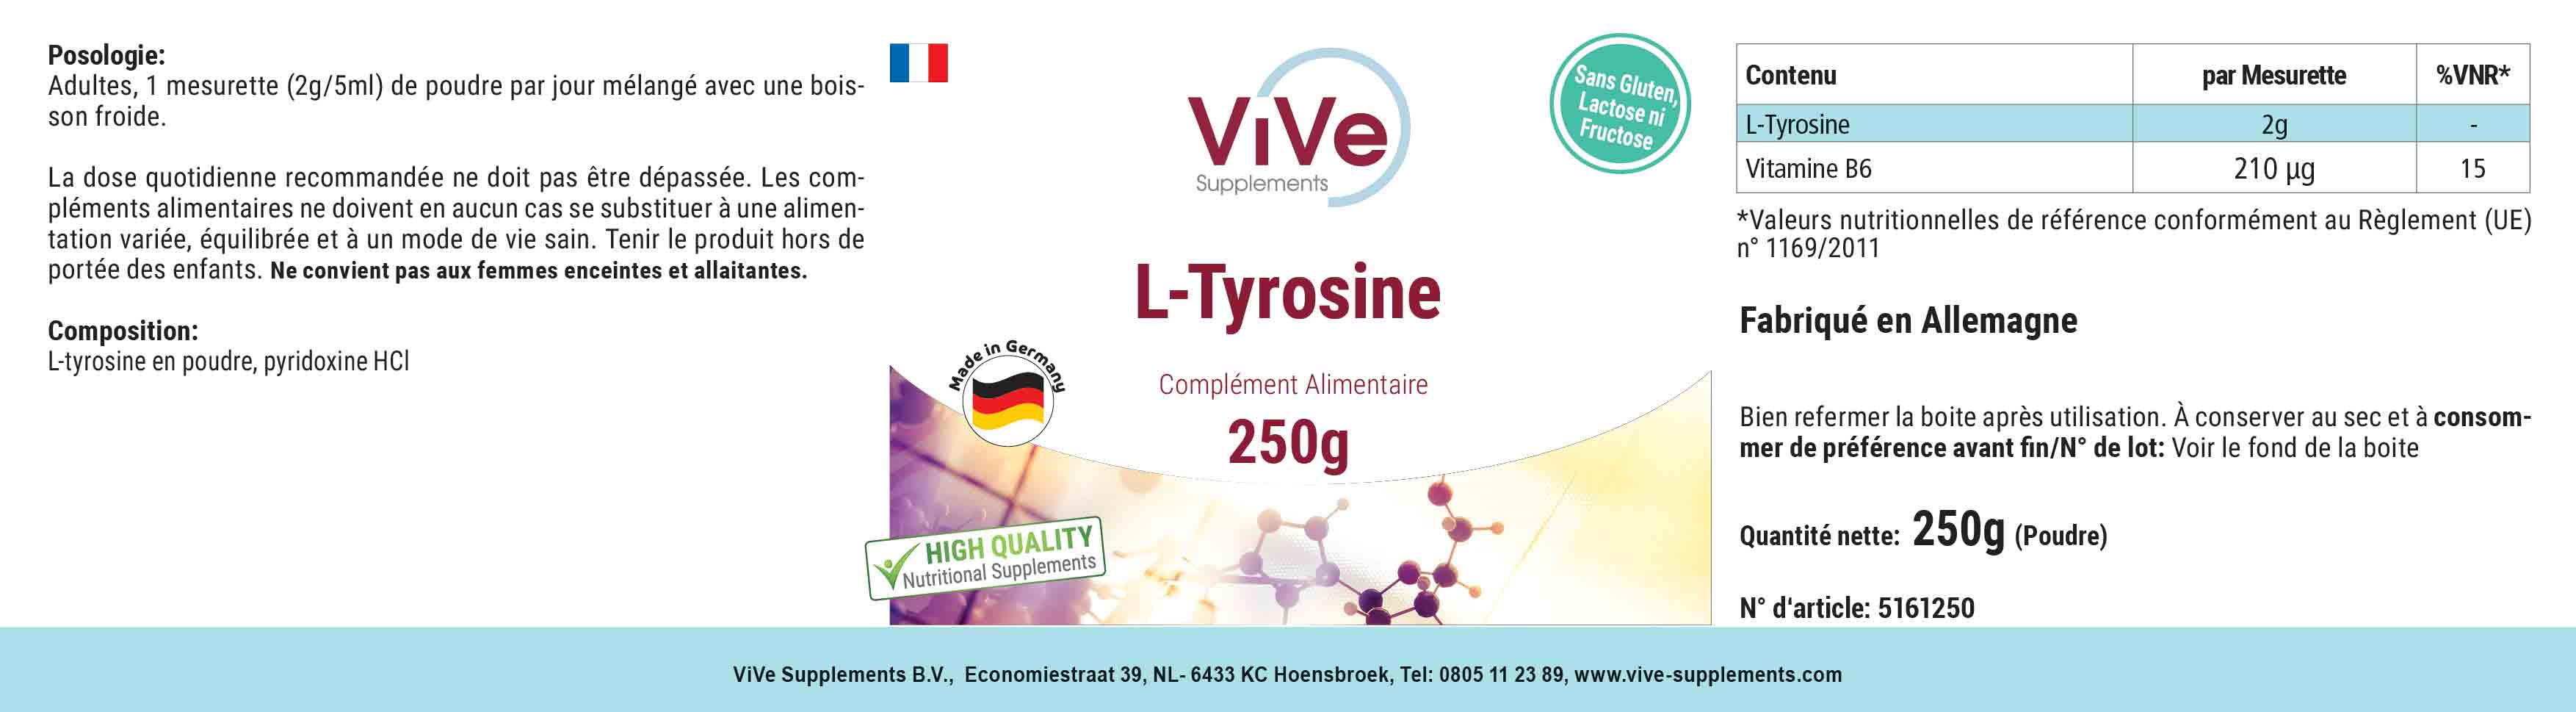 L-Tyrosin Pulver 250g + Vitamin B6